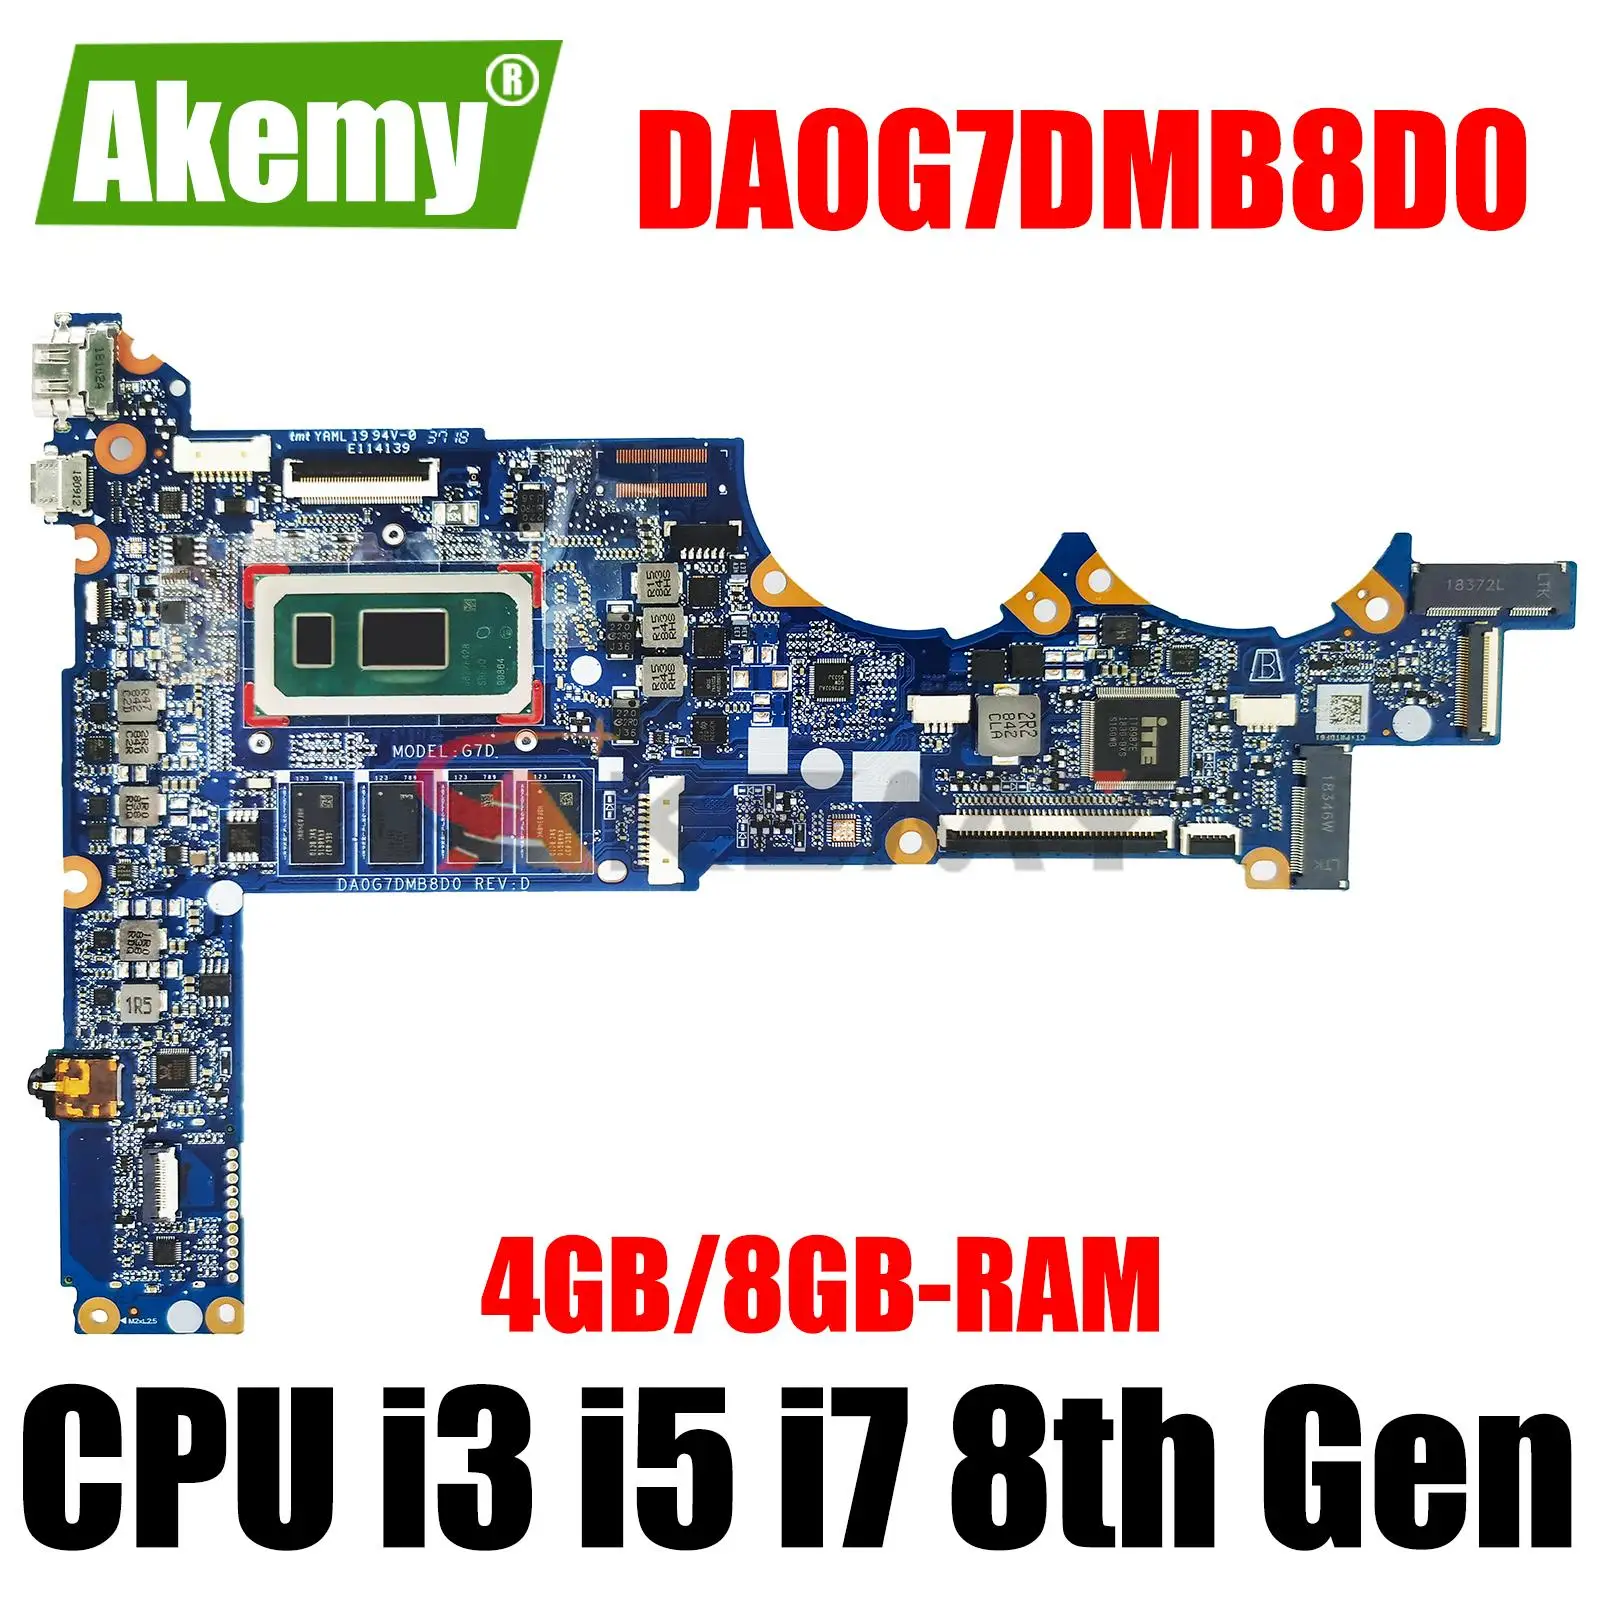 

L37350-601 L37350-601 Laptop Motherboard DA0G7DMB8D0 w/ i3 i5 i7 8th Gen 4GB 8GB RAM for HP Spectre 13-AN 13-AN00 Laptops UMA